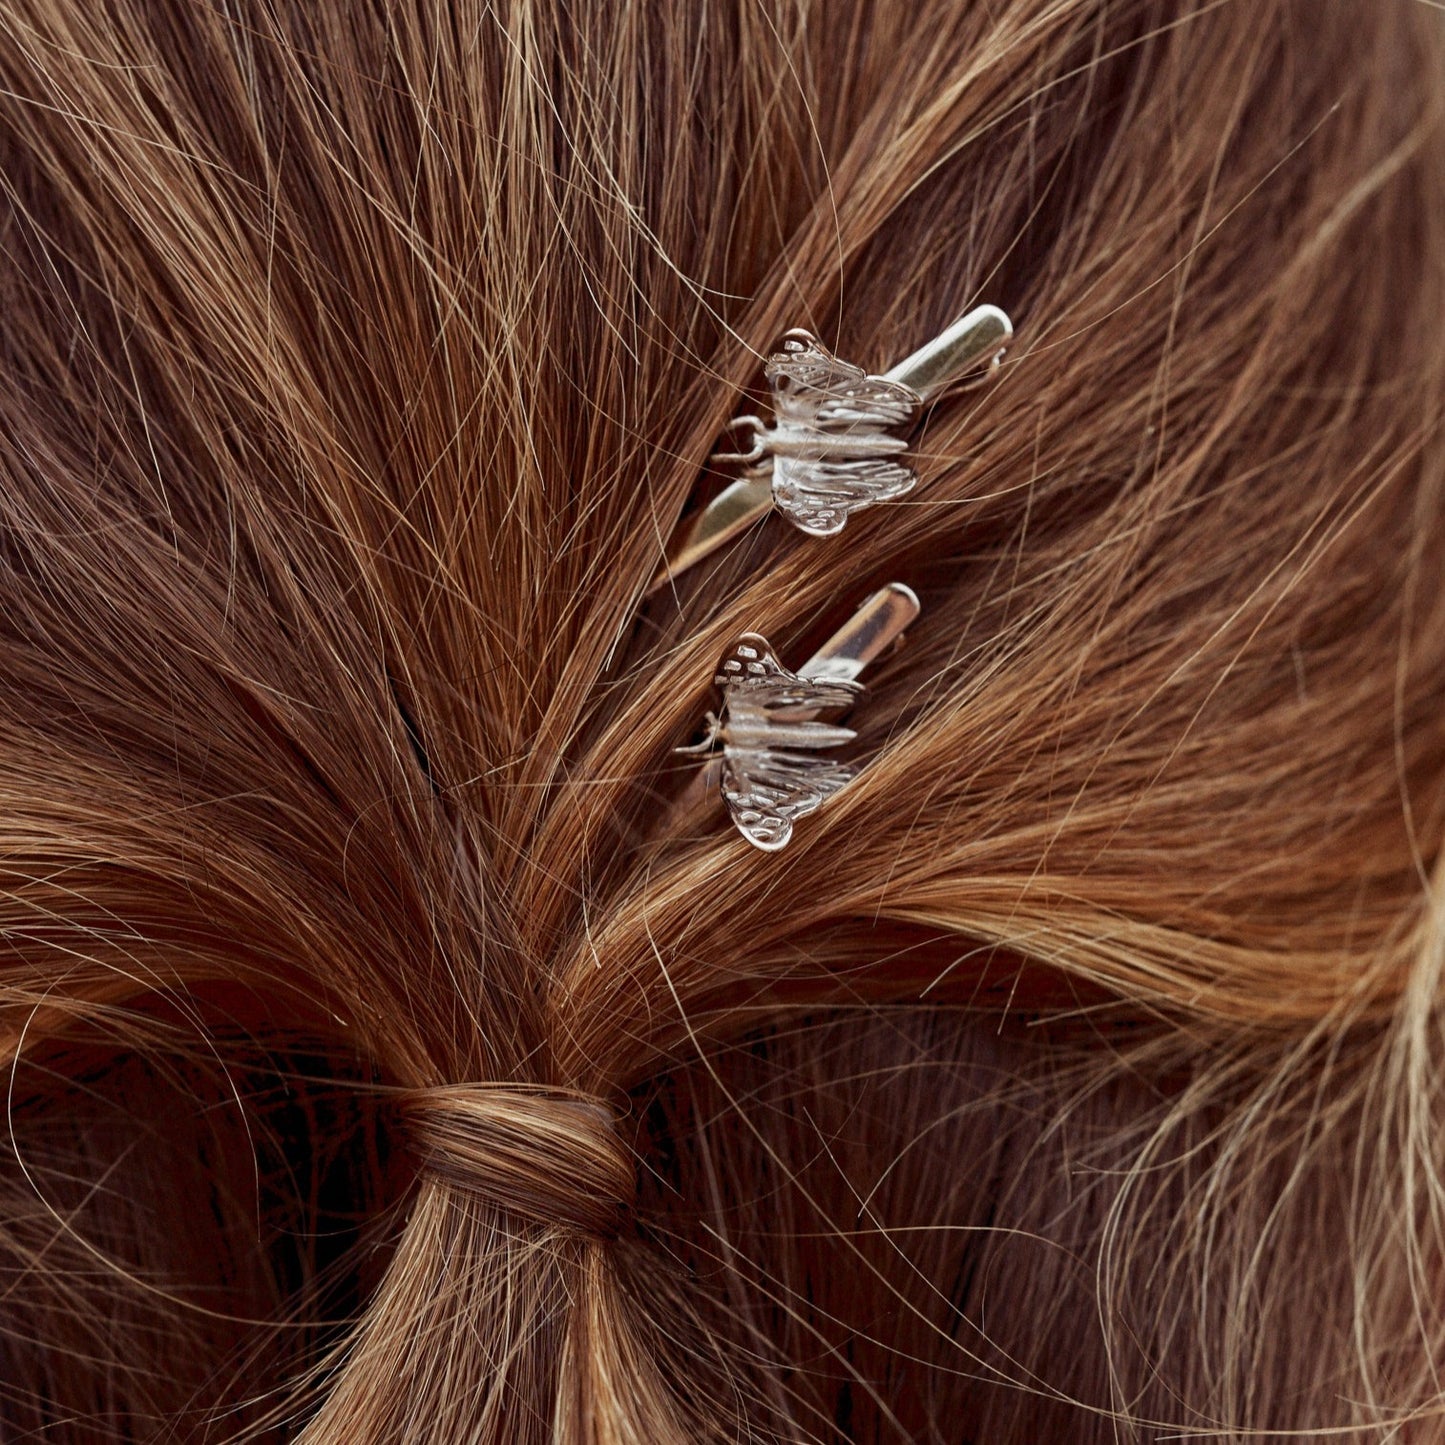 Detalle del peinado de la modelo con los Pasadores Papillon, con mariposas elaboradas en plata de ley.